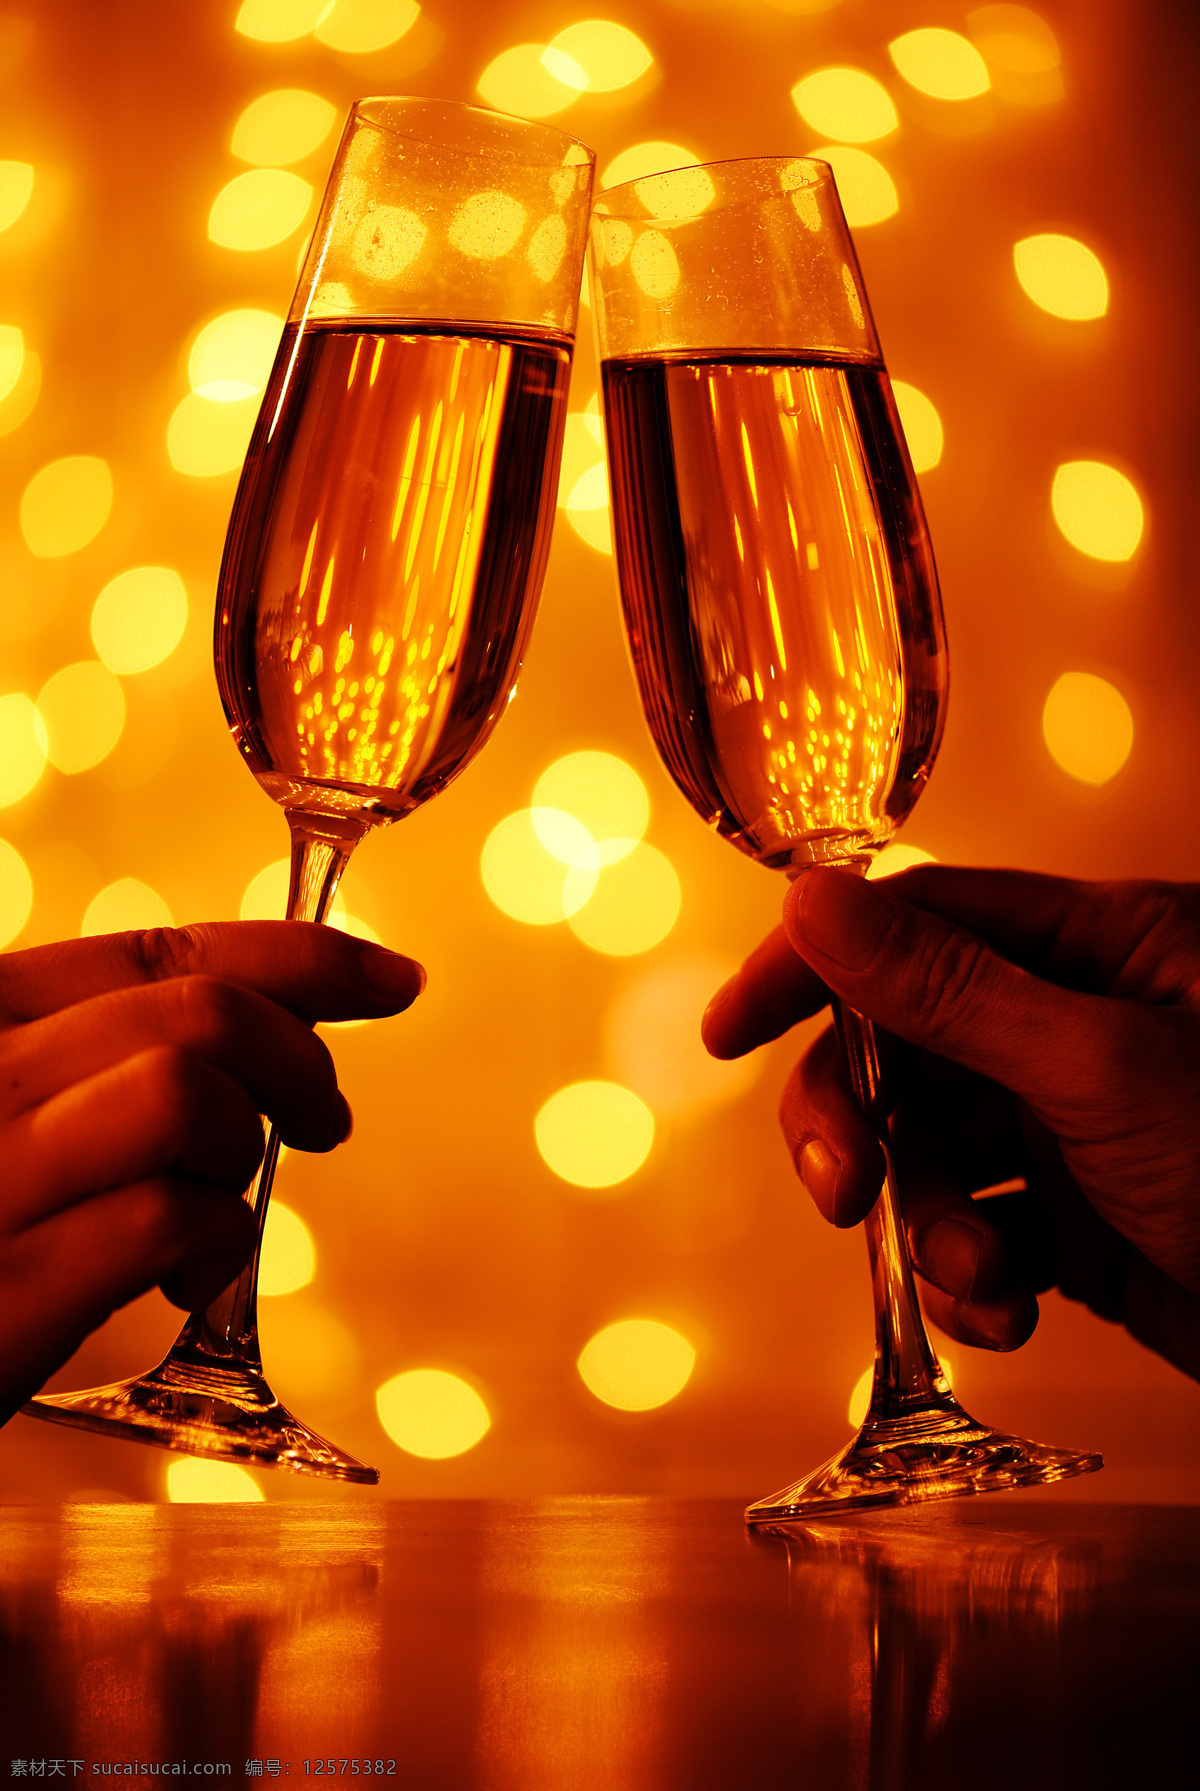 香槟 美酒 高脚杯 洋酒 羊年 干杯 酒杯 玻璃杯 香槟酒 新年 节日庆祝 饮料酒水 餐饮美食 橙色